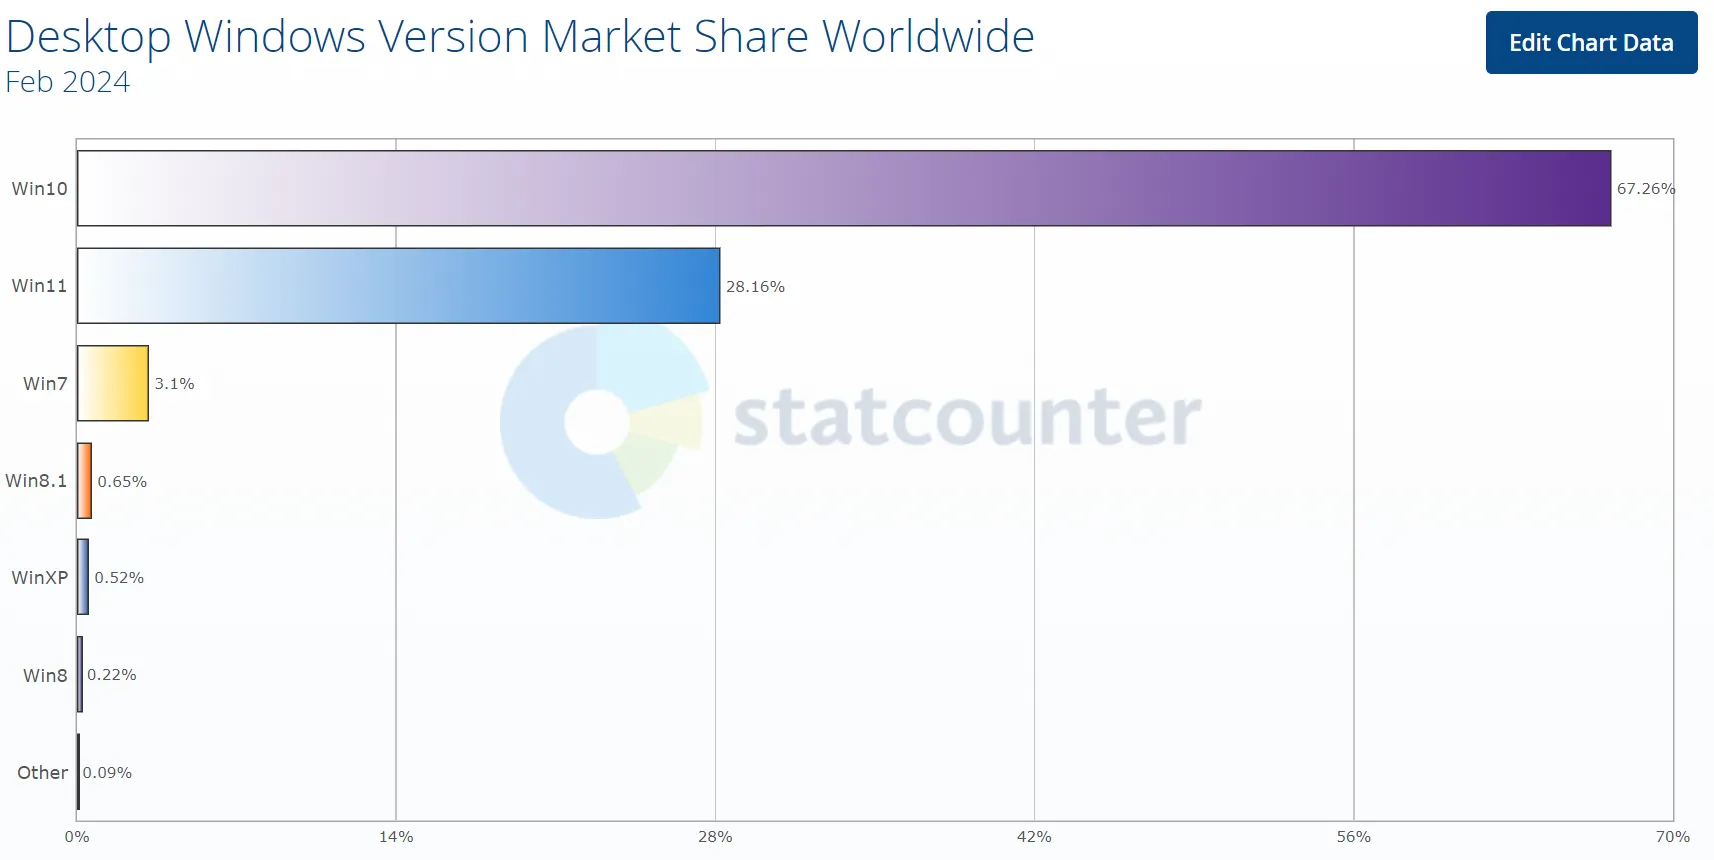 Cuota de mercado de la versión de escritorio de Windows a nivel mundial